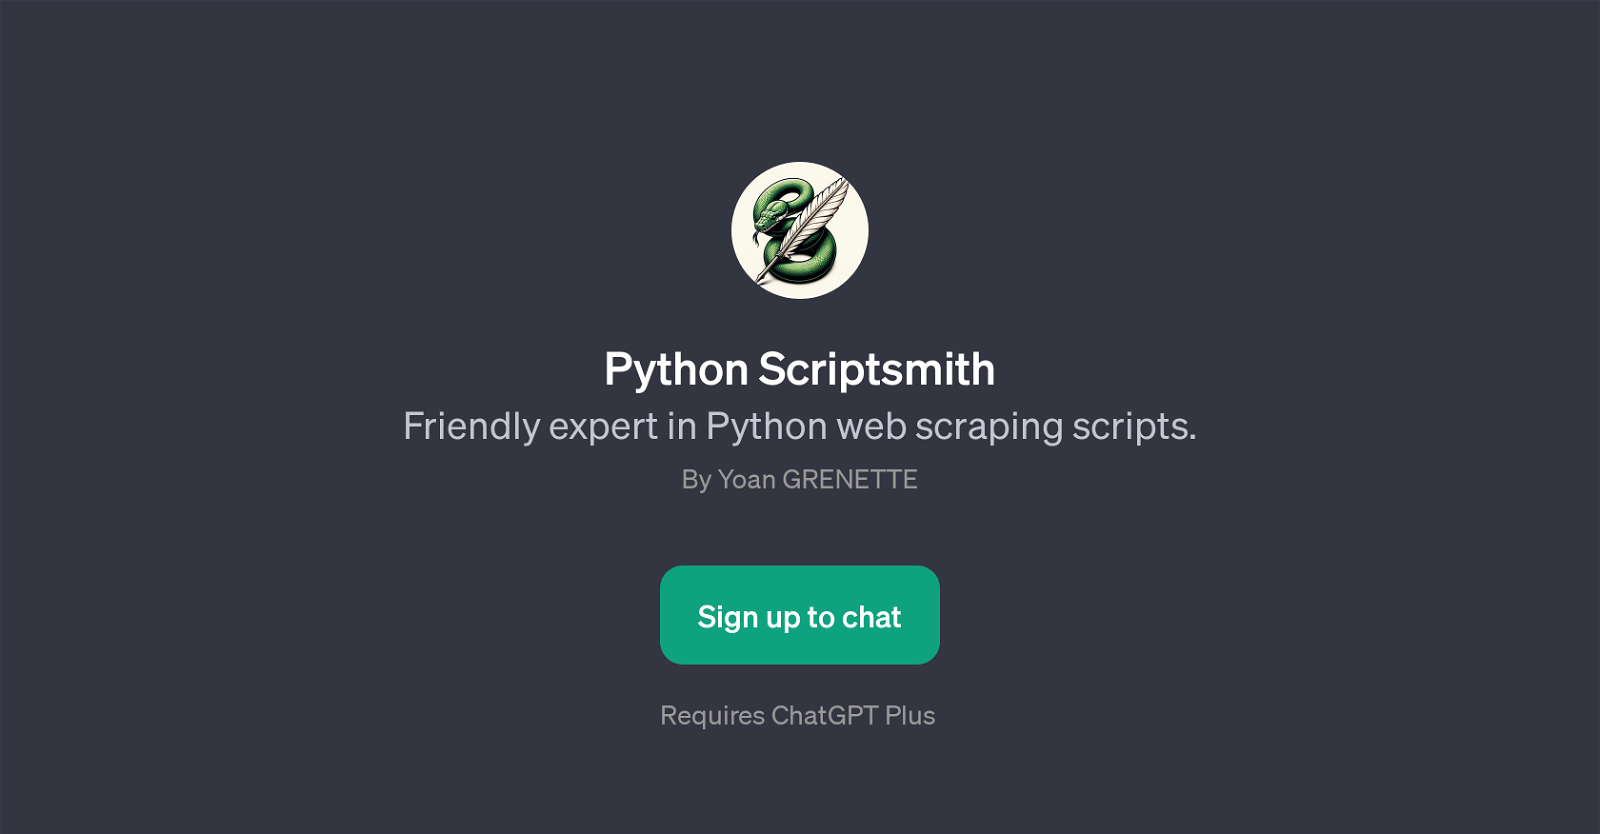 Python Scriptsmith website